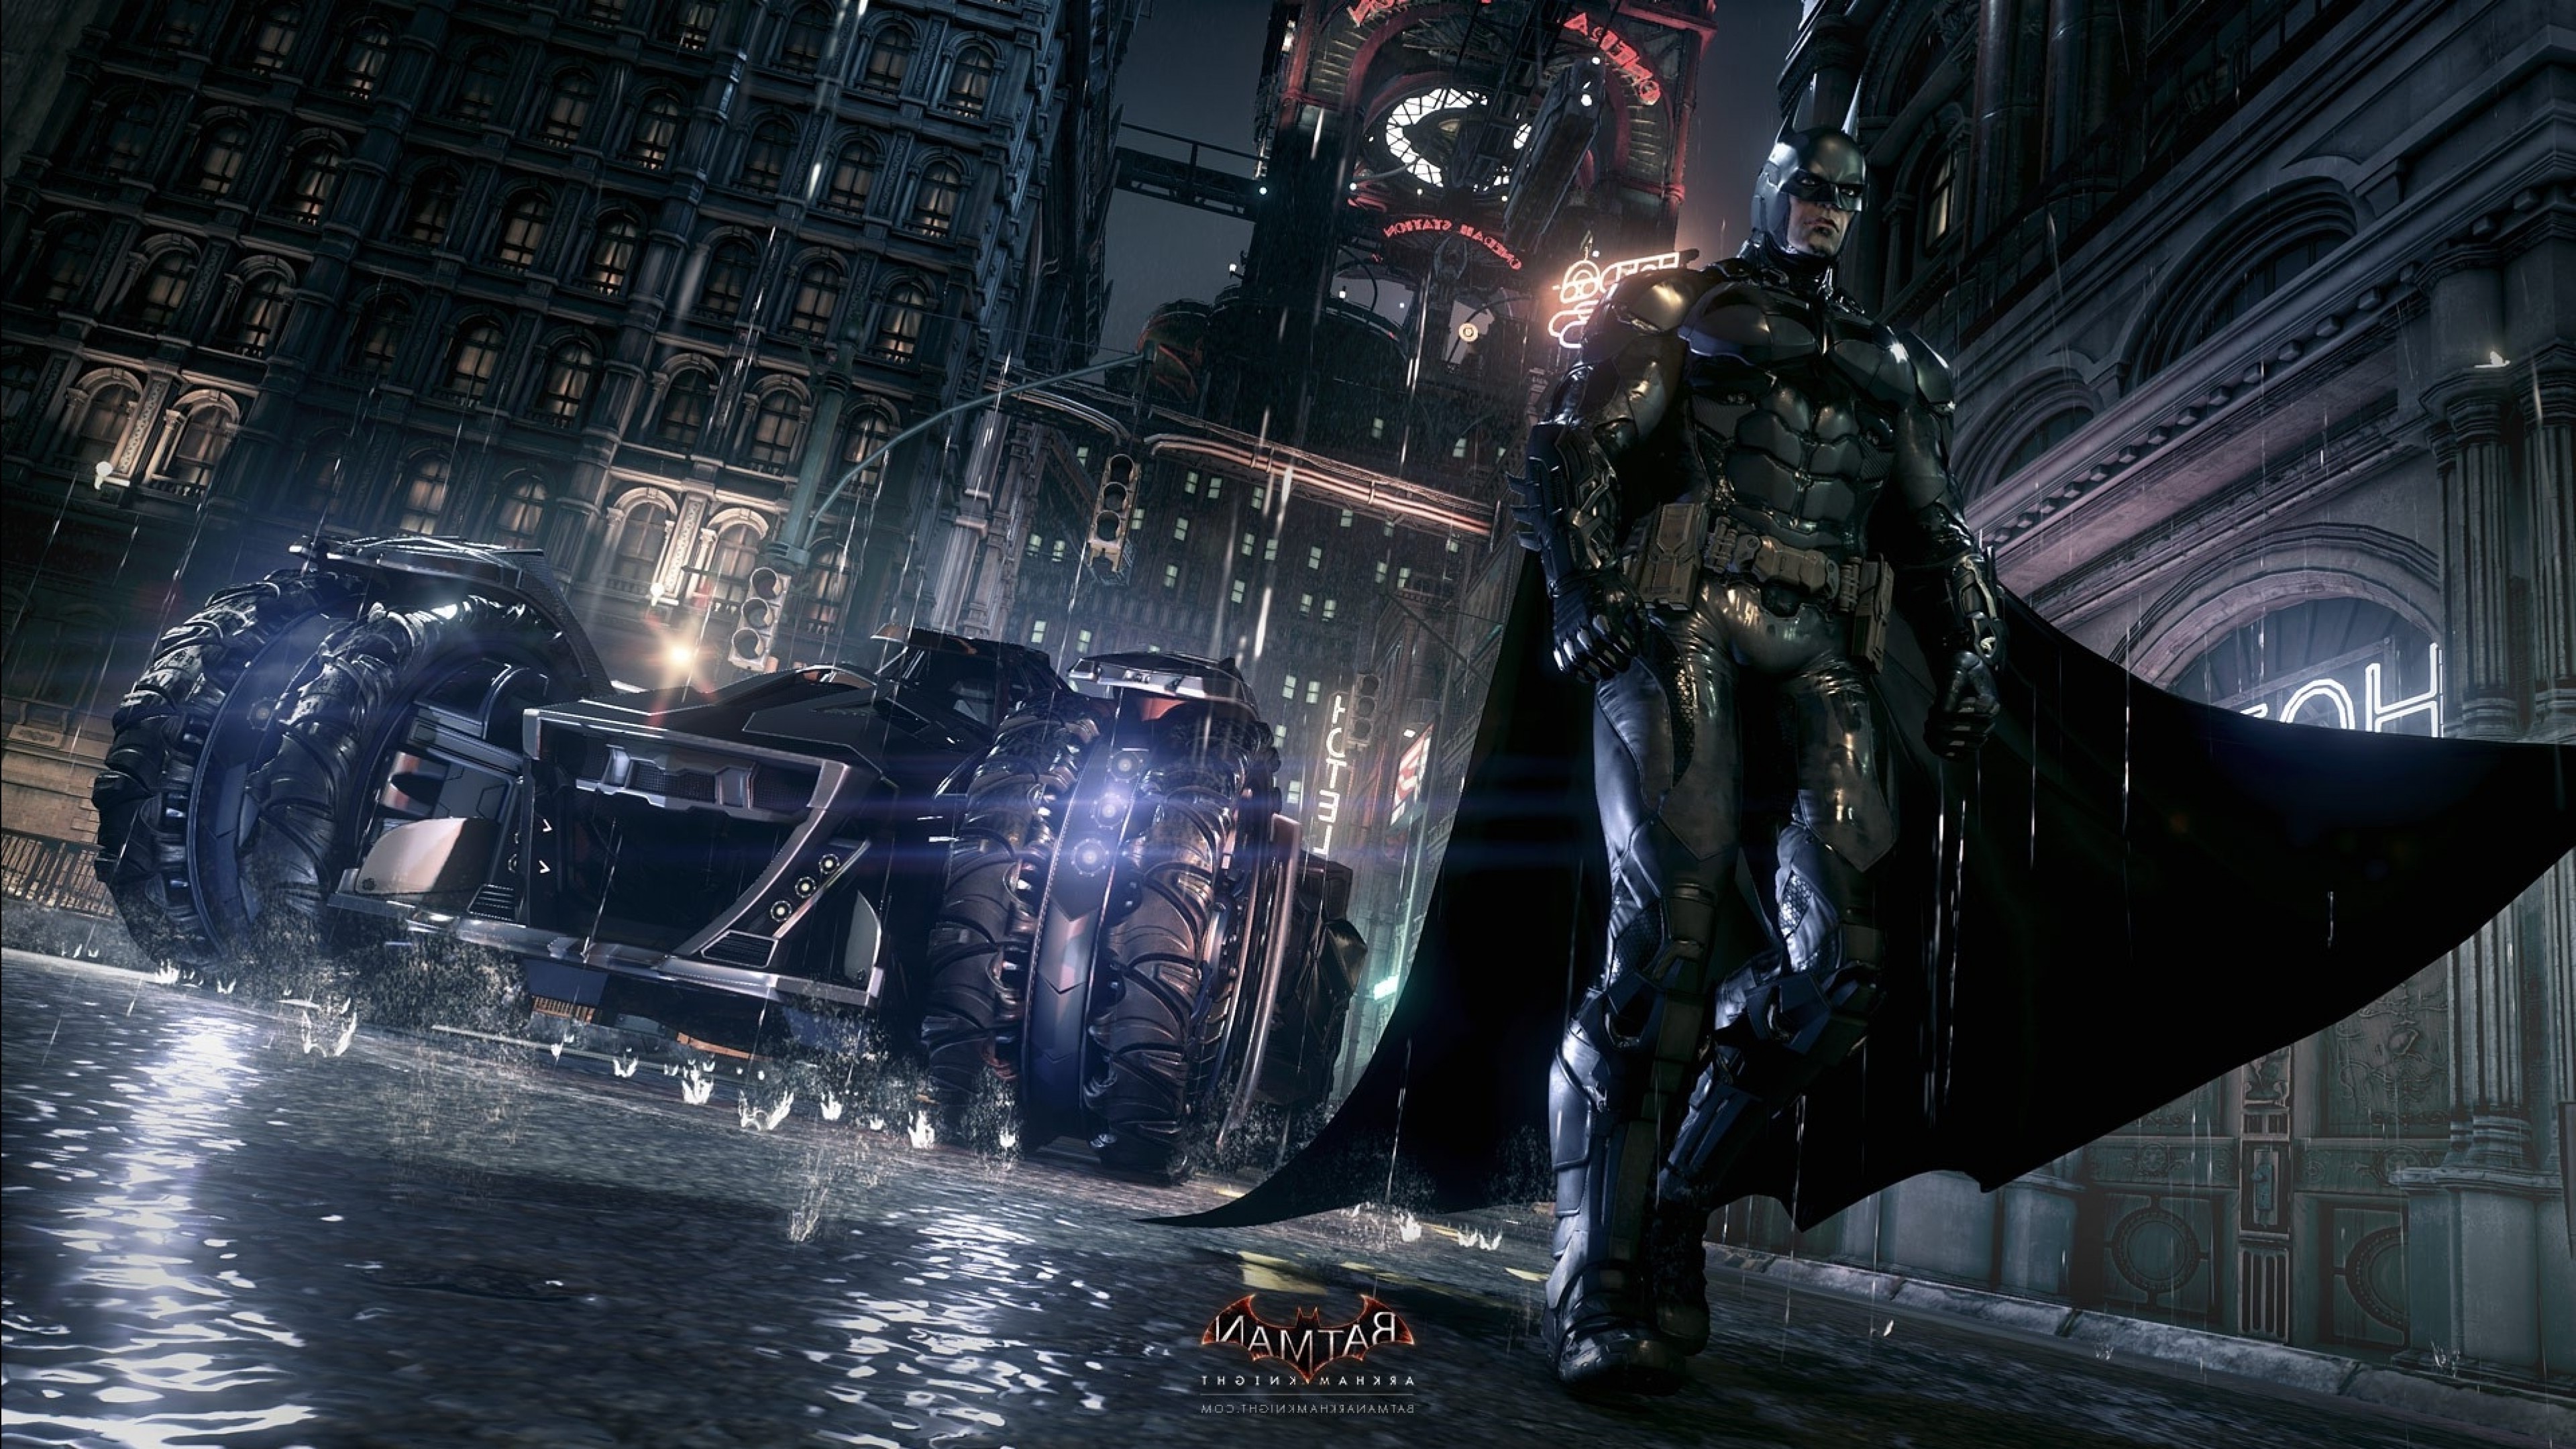 l 3 batman arkham city images